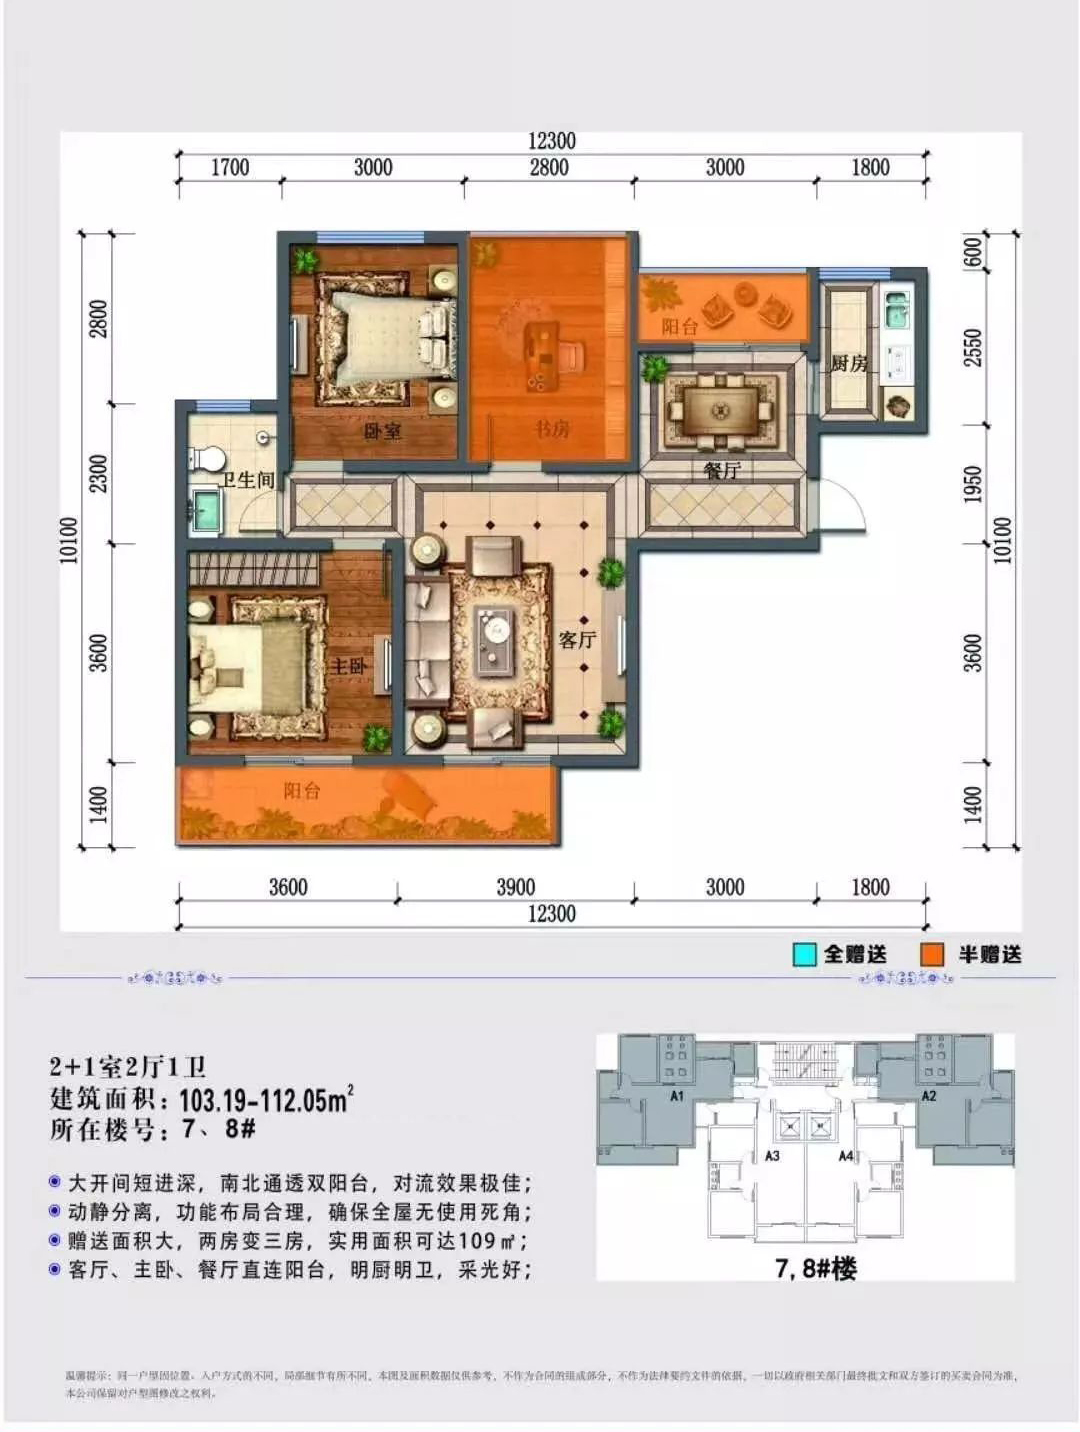 高层 2+1室2厅1卫 建筑面积103.19㎡ 7、8#